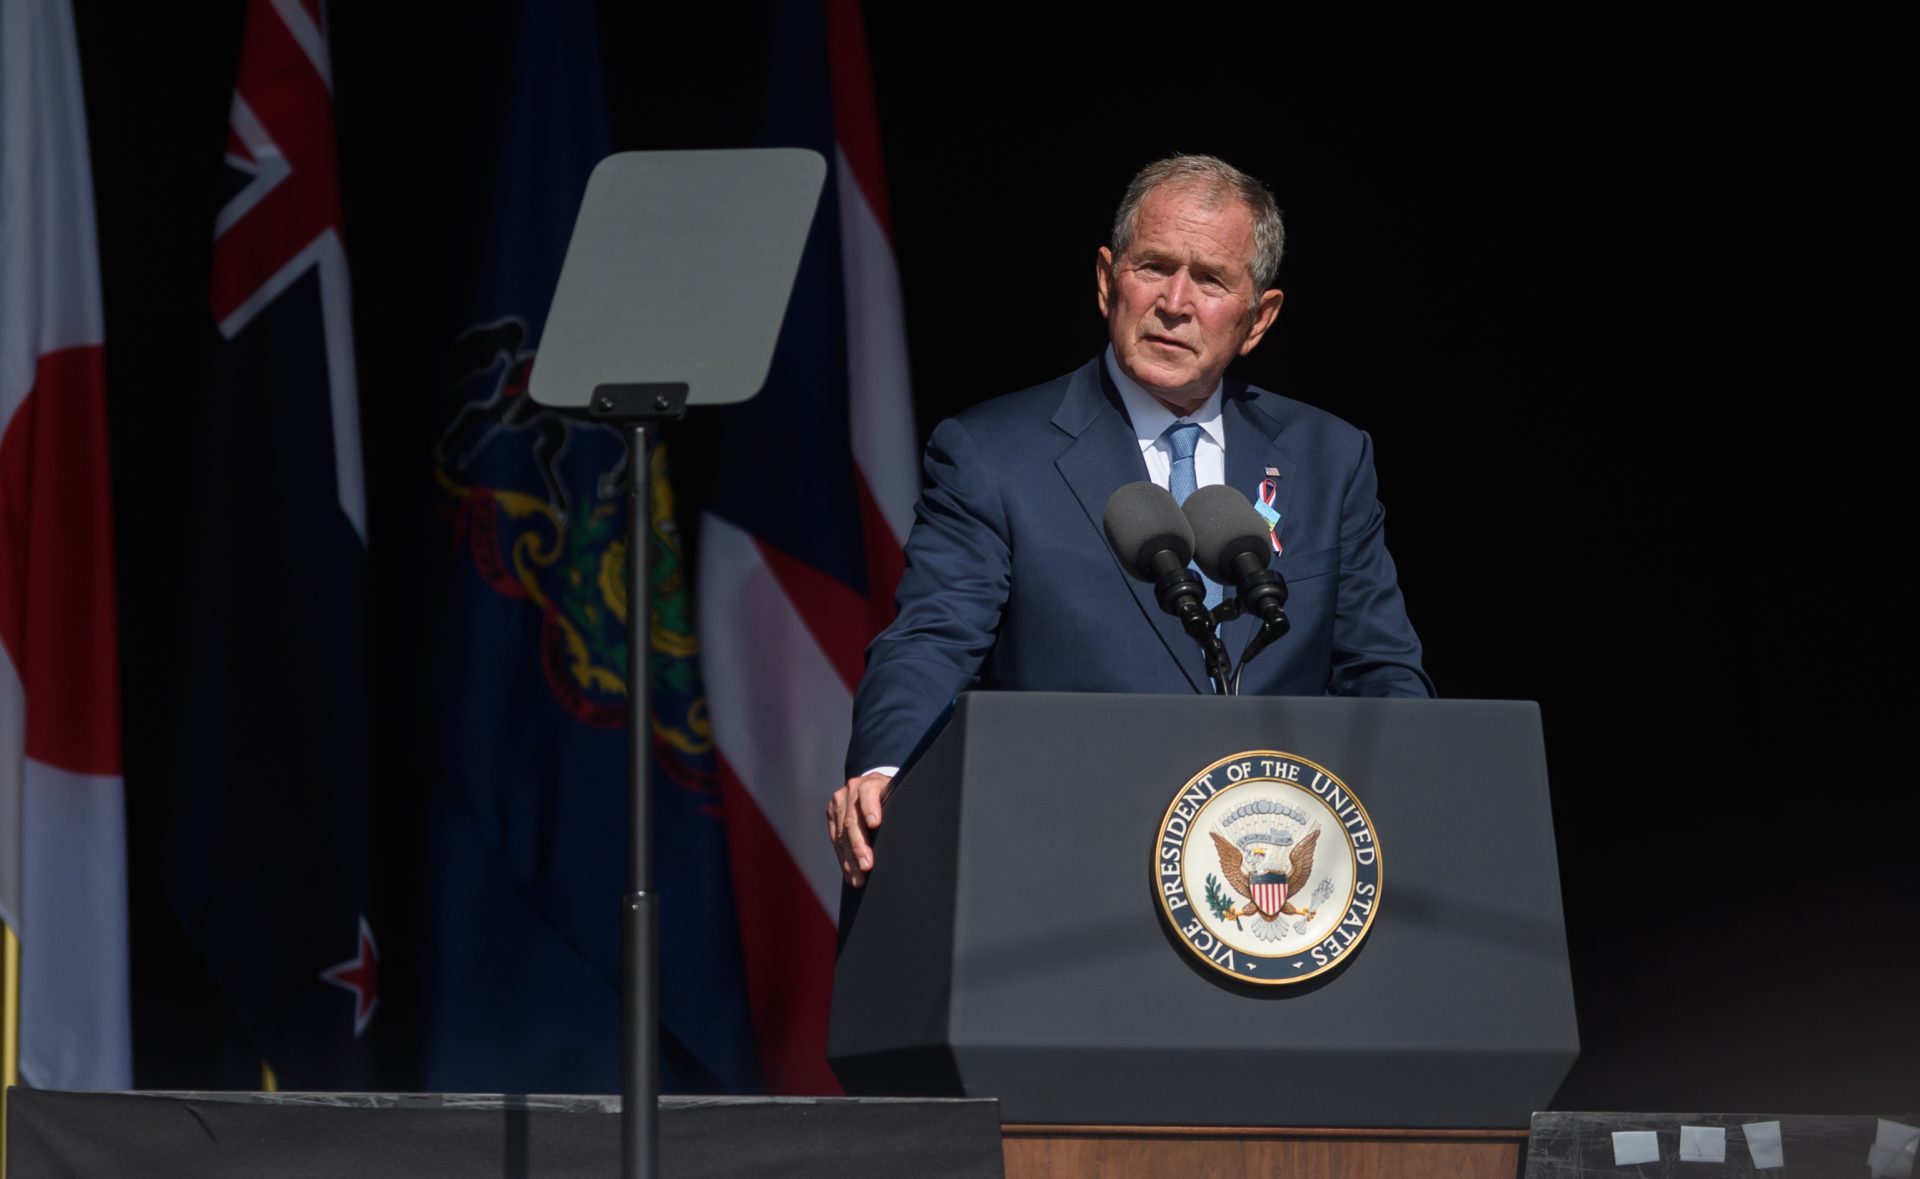 George W. Bush Mistakenly Criticizes Putin’s “Brutal Invasion Of Iraq” Instead Of Ukraine